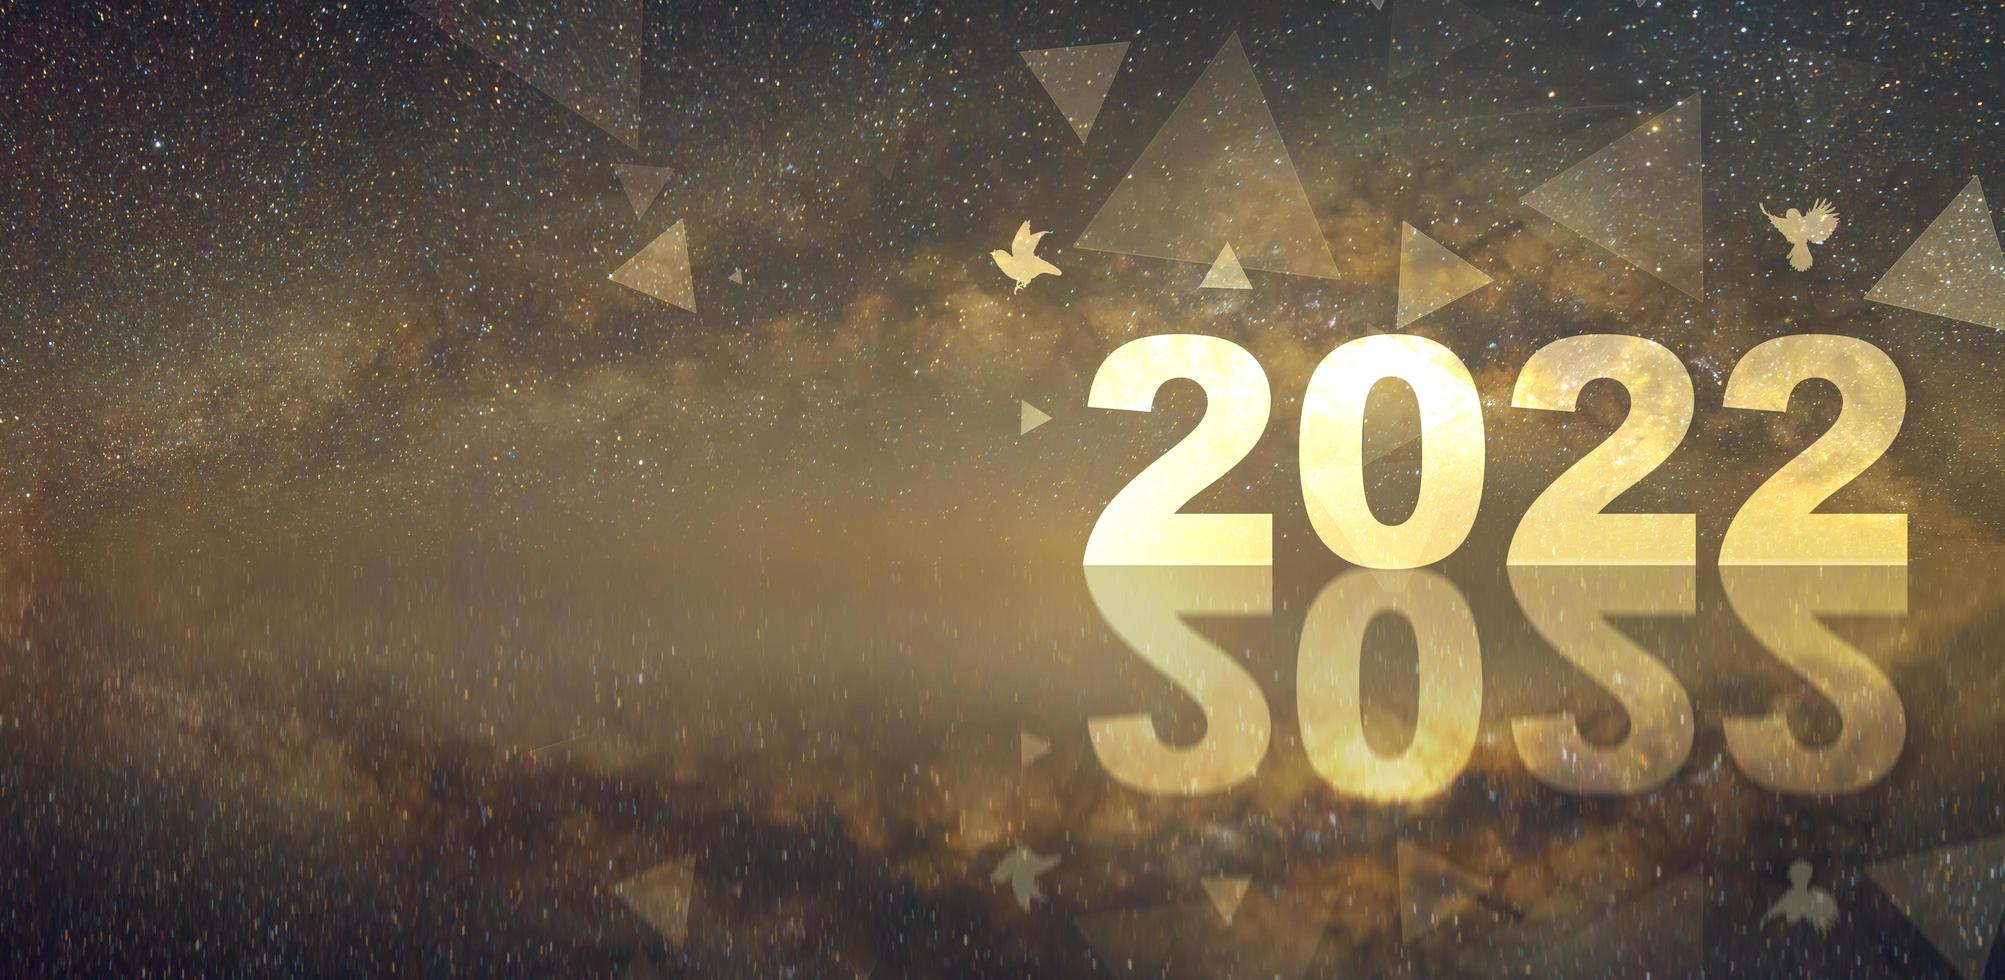 diseño horizontal panorámica de feliz año nuevo 2022 con fuegos artificiales y fondo de la vía láctea. foto